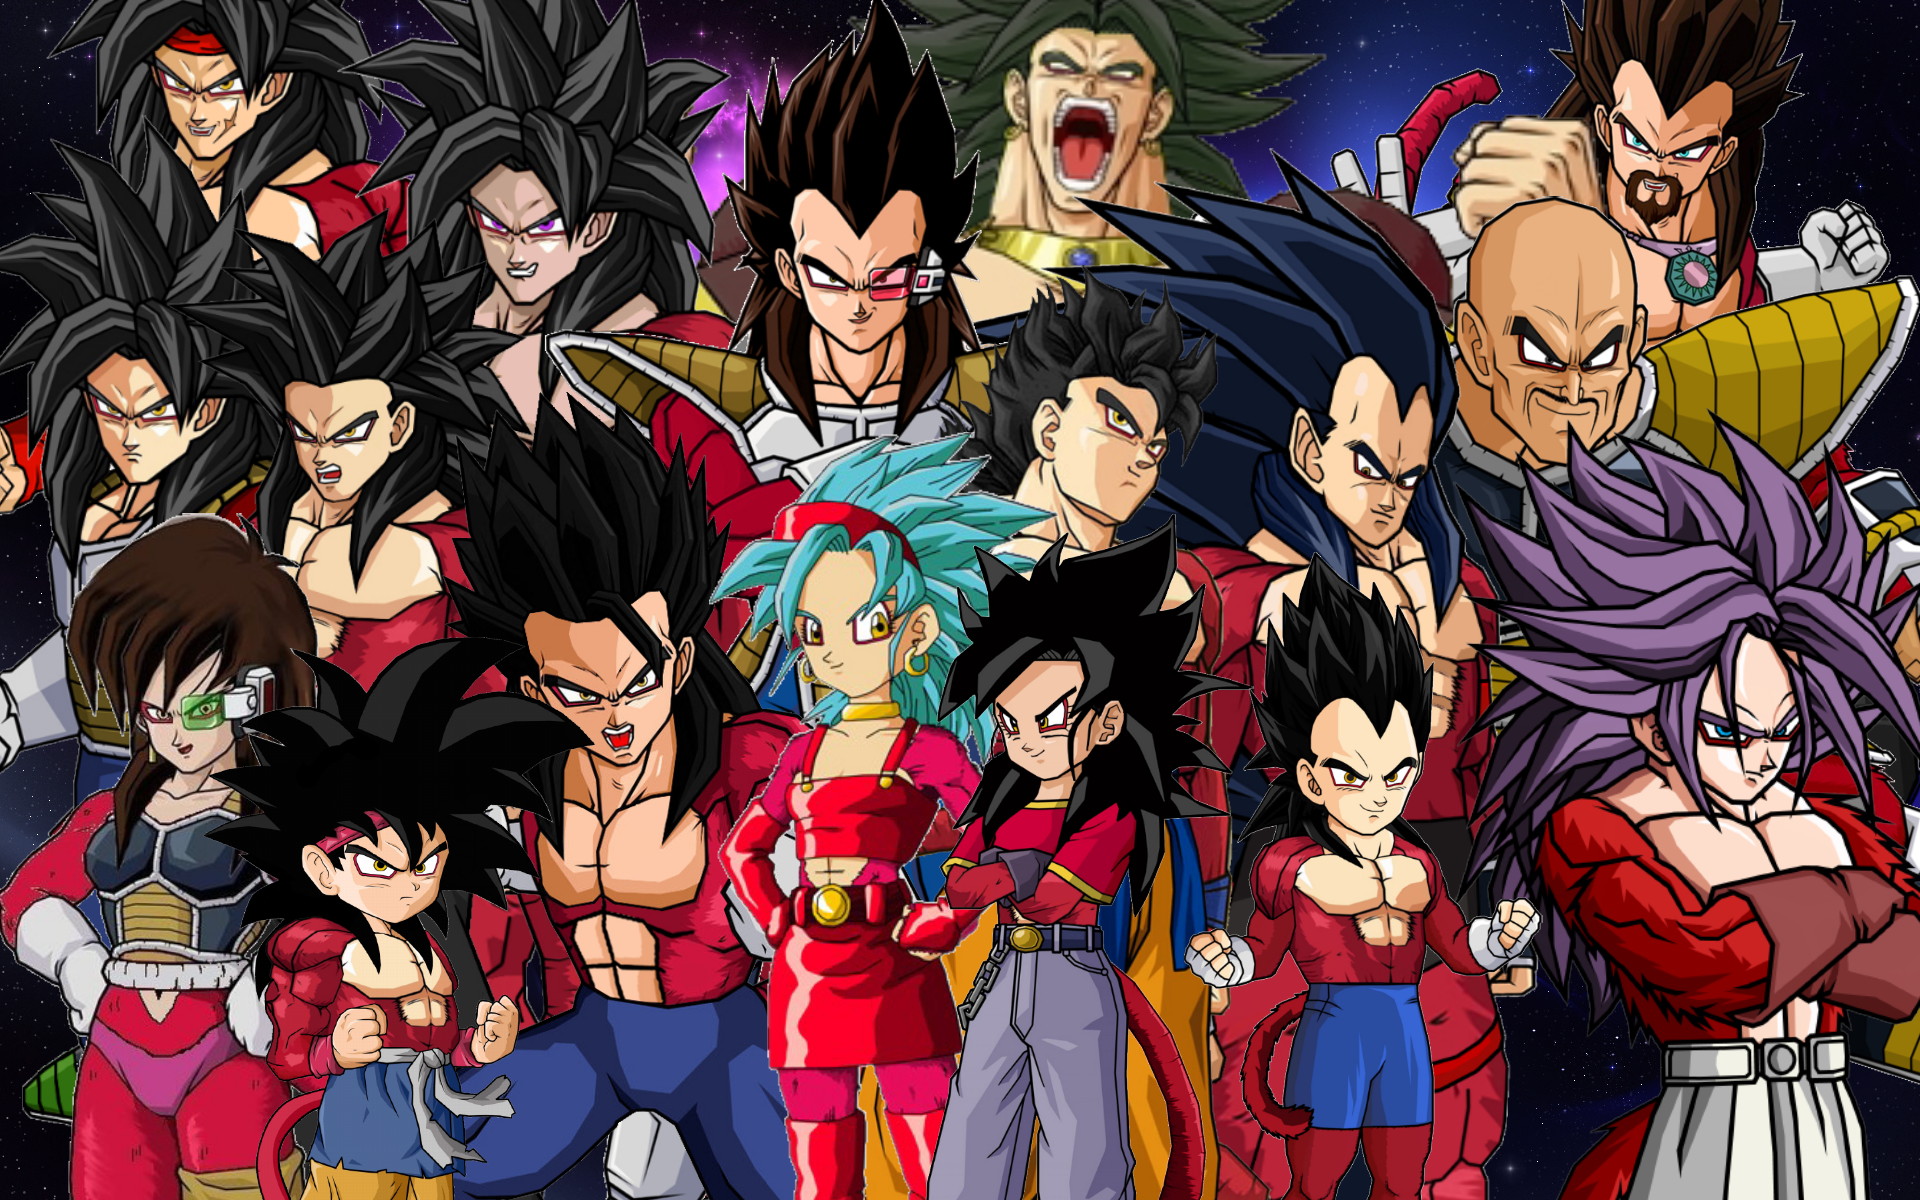 Goku Ss4 Wallpaper